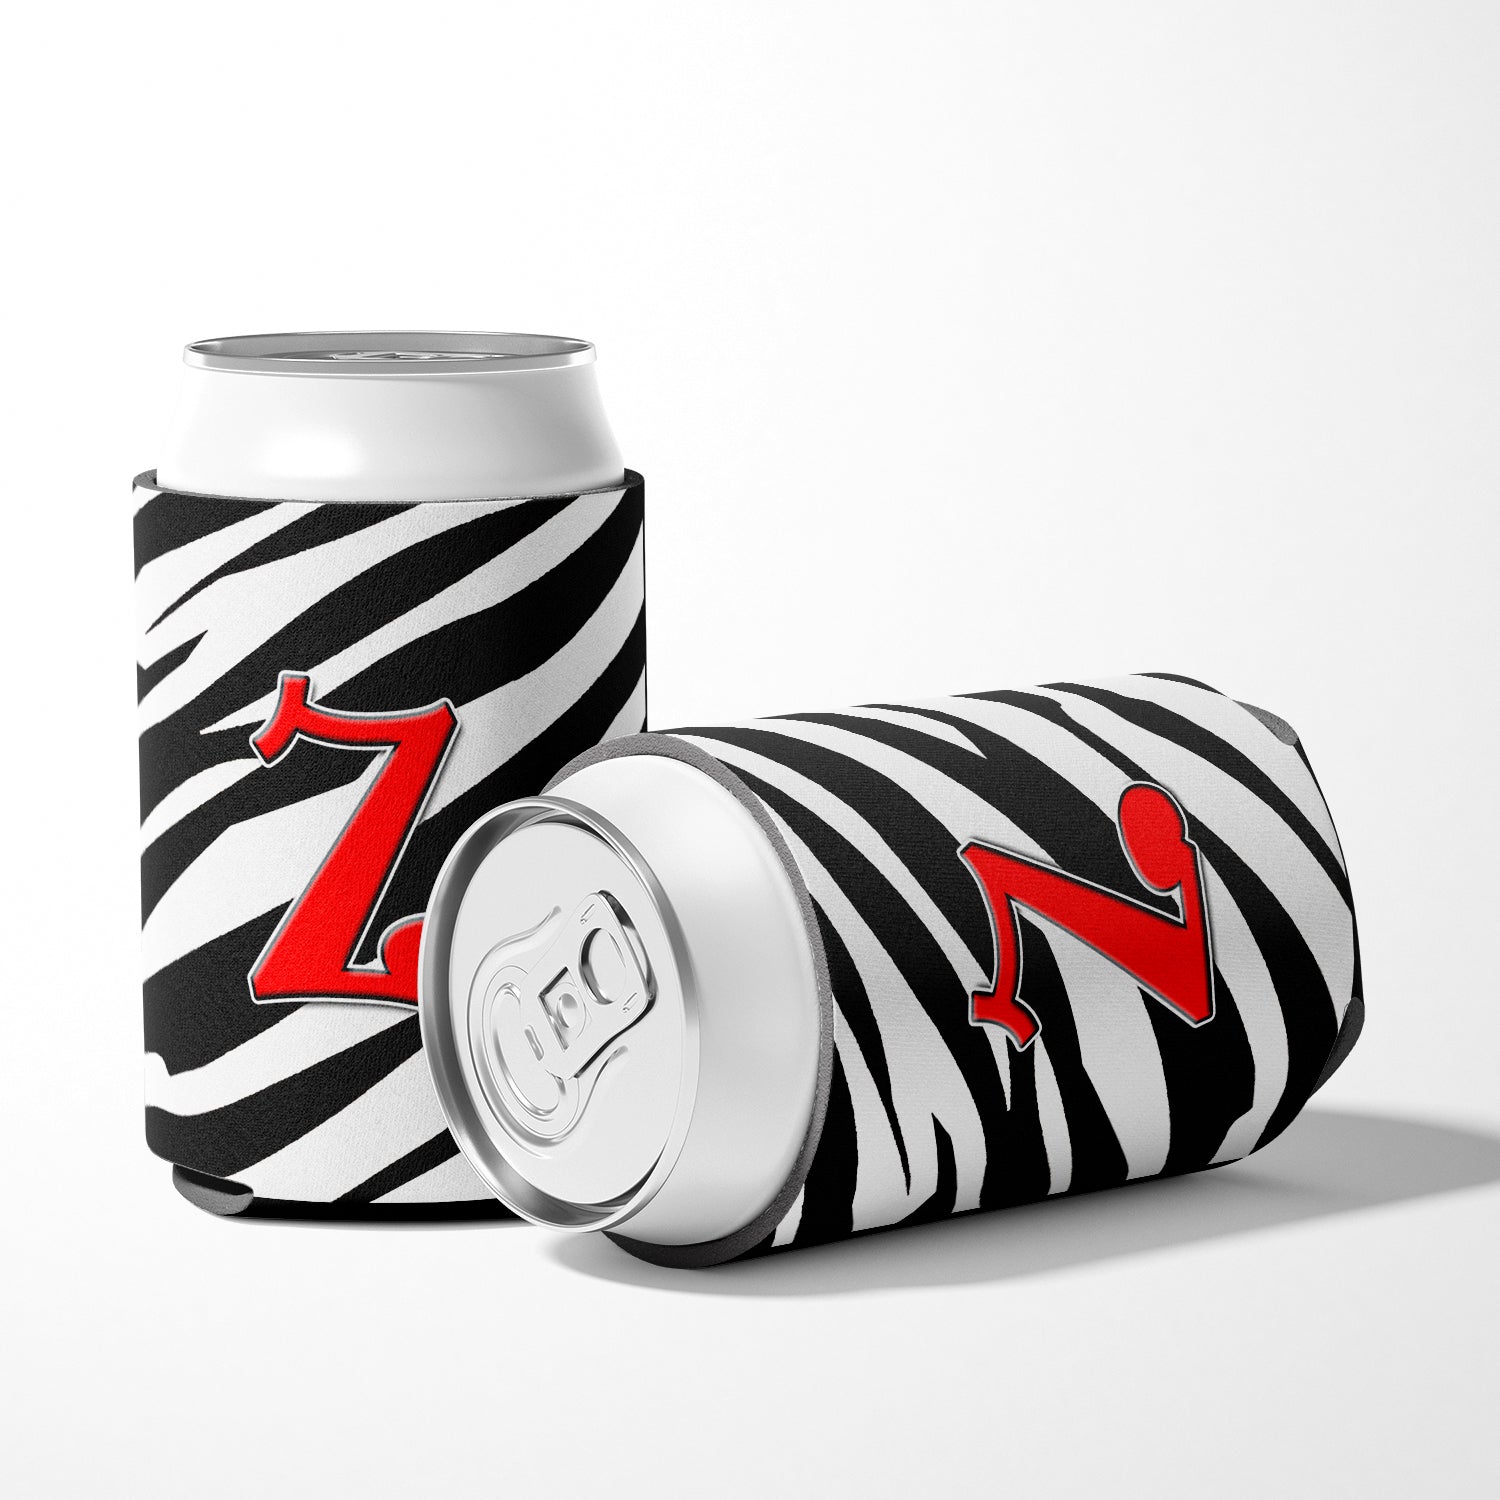 Letter Z Initial Monogram - Zebra Red Can or Bottle Beverage Insulator Hugger.